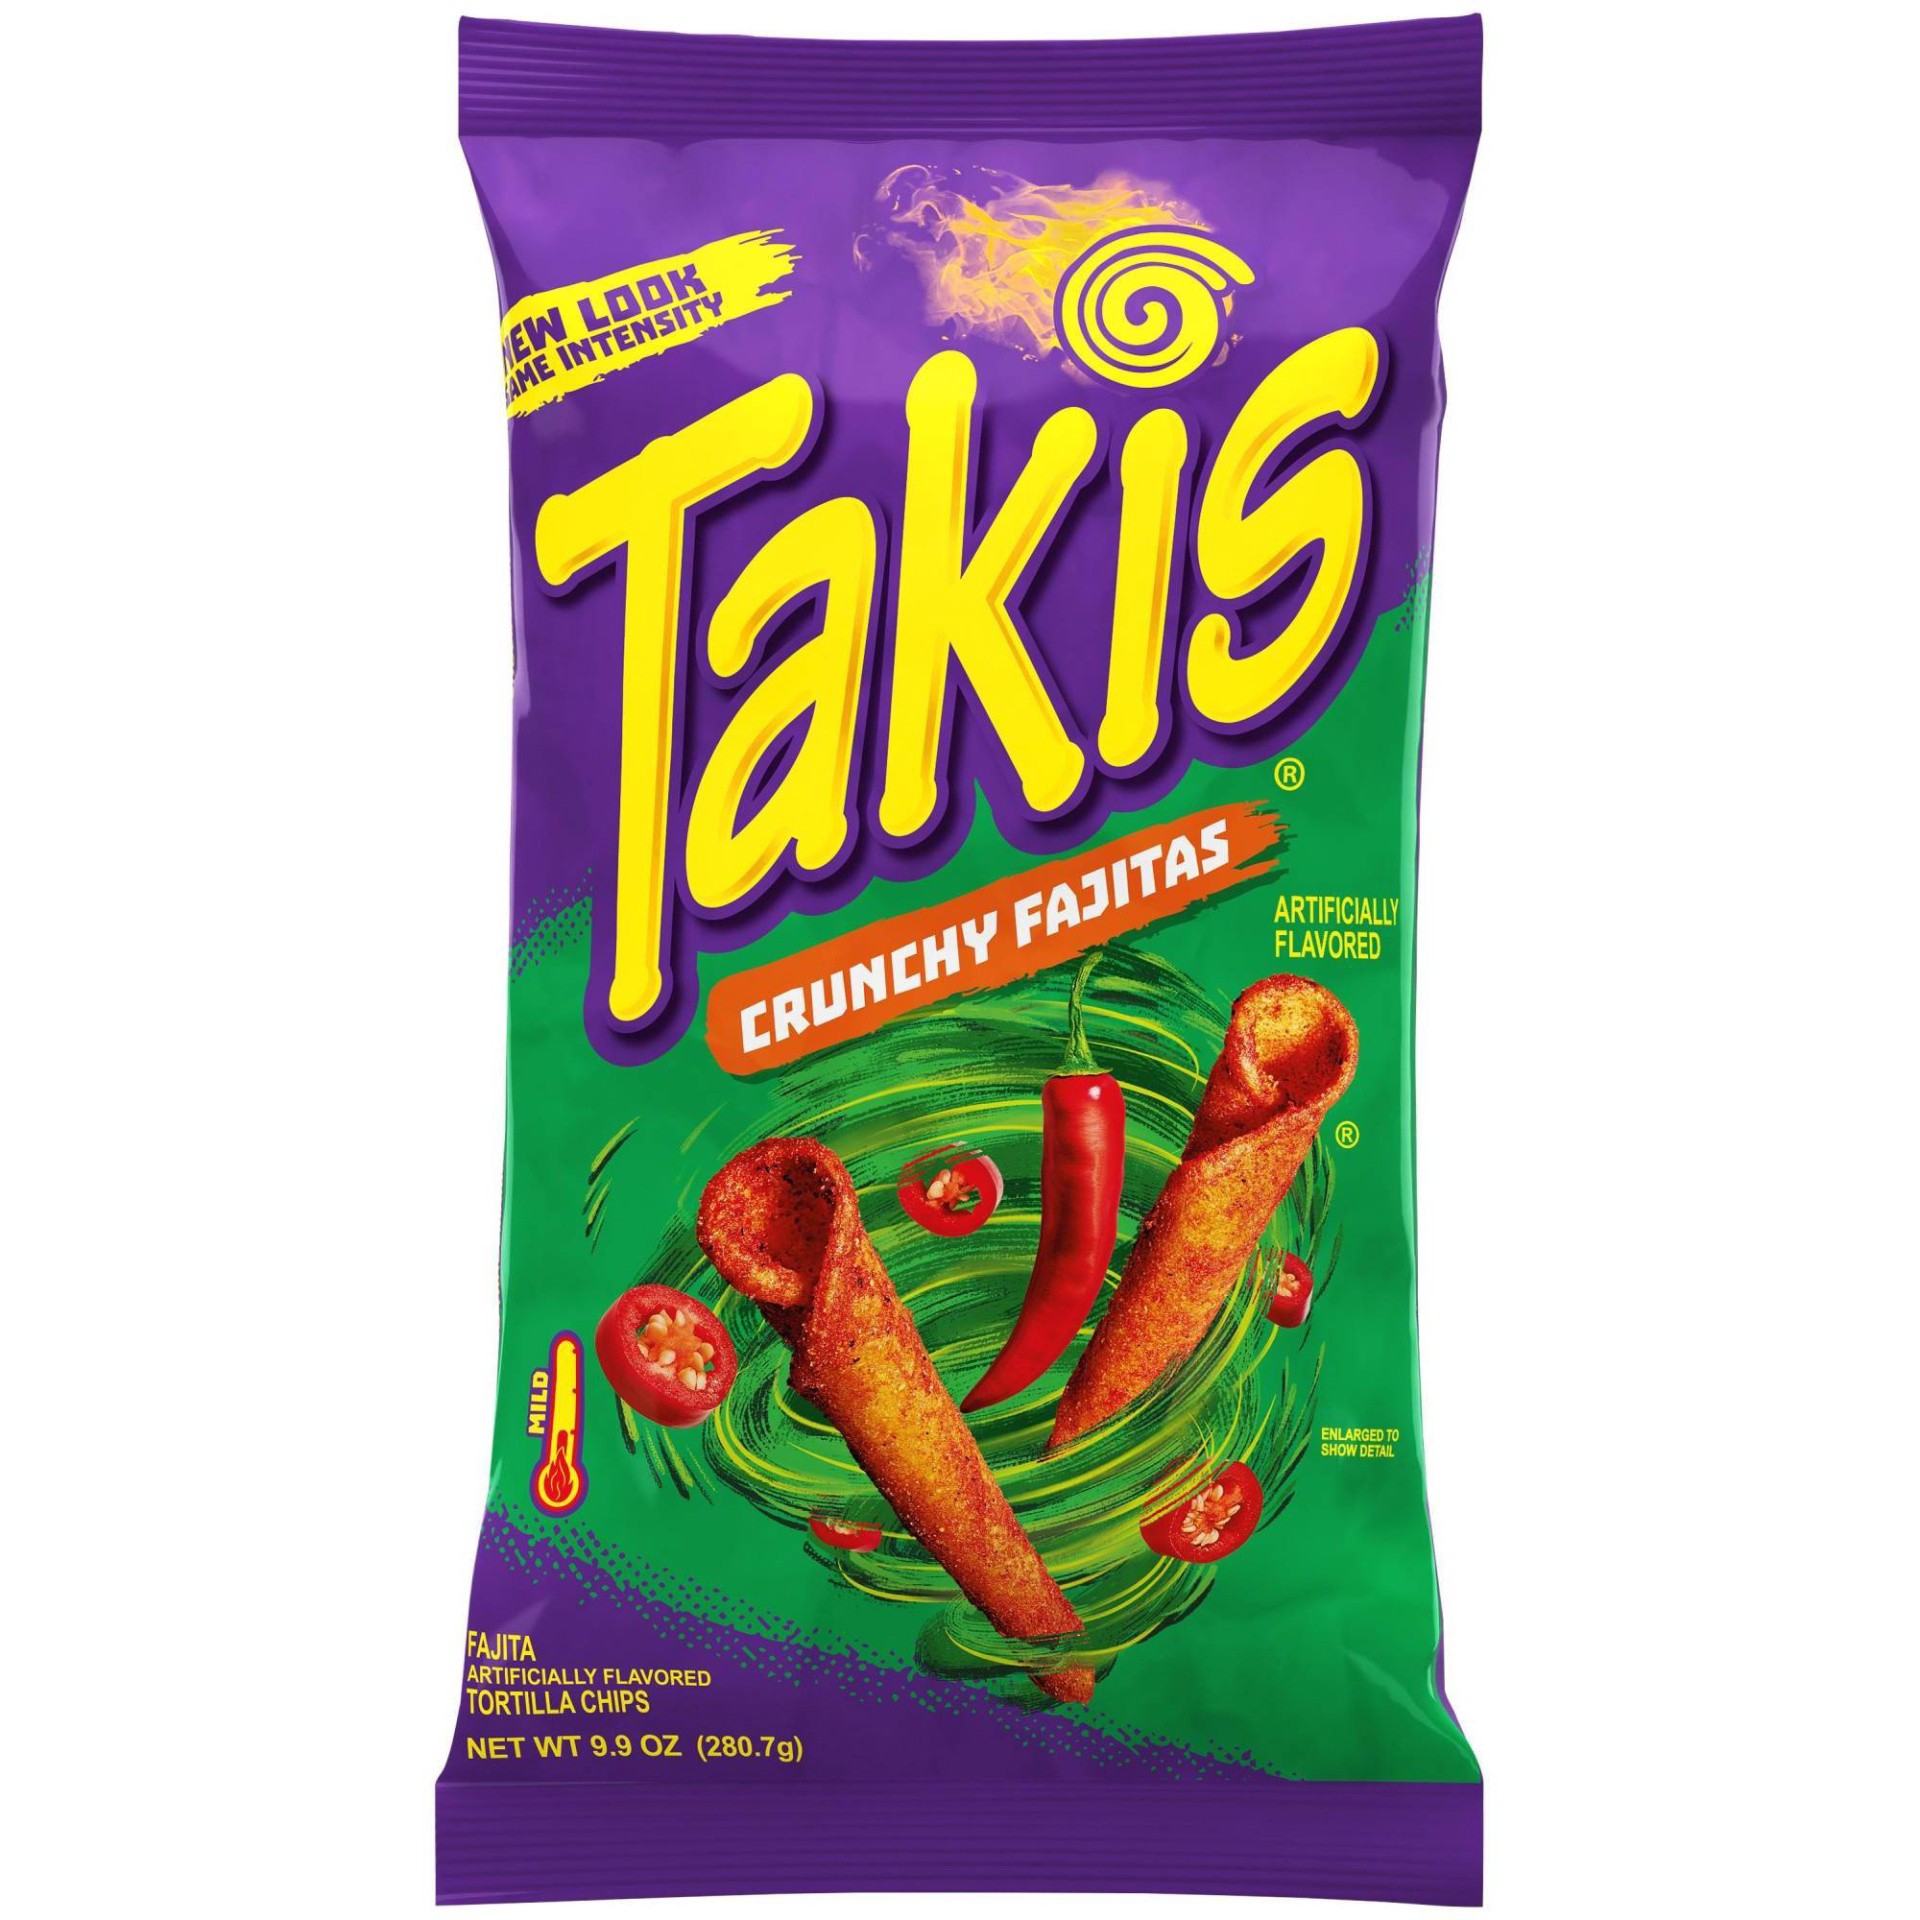 slide 1 of 7, Barcel Takis Rolled Crunchy Fajitas Tortilla Chips, 9.9 oz